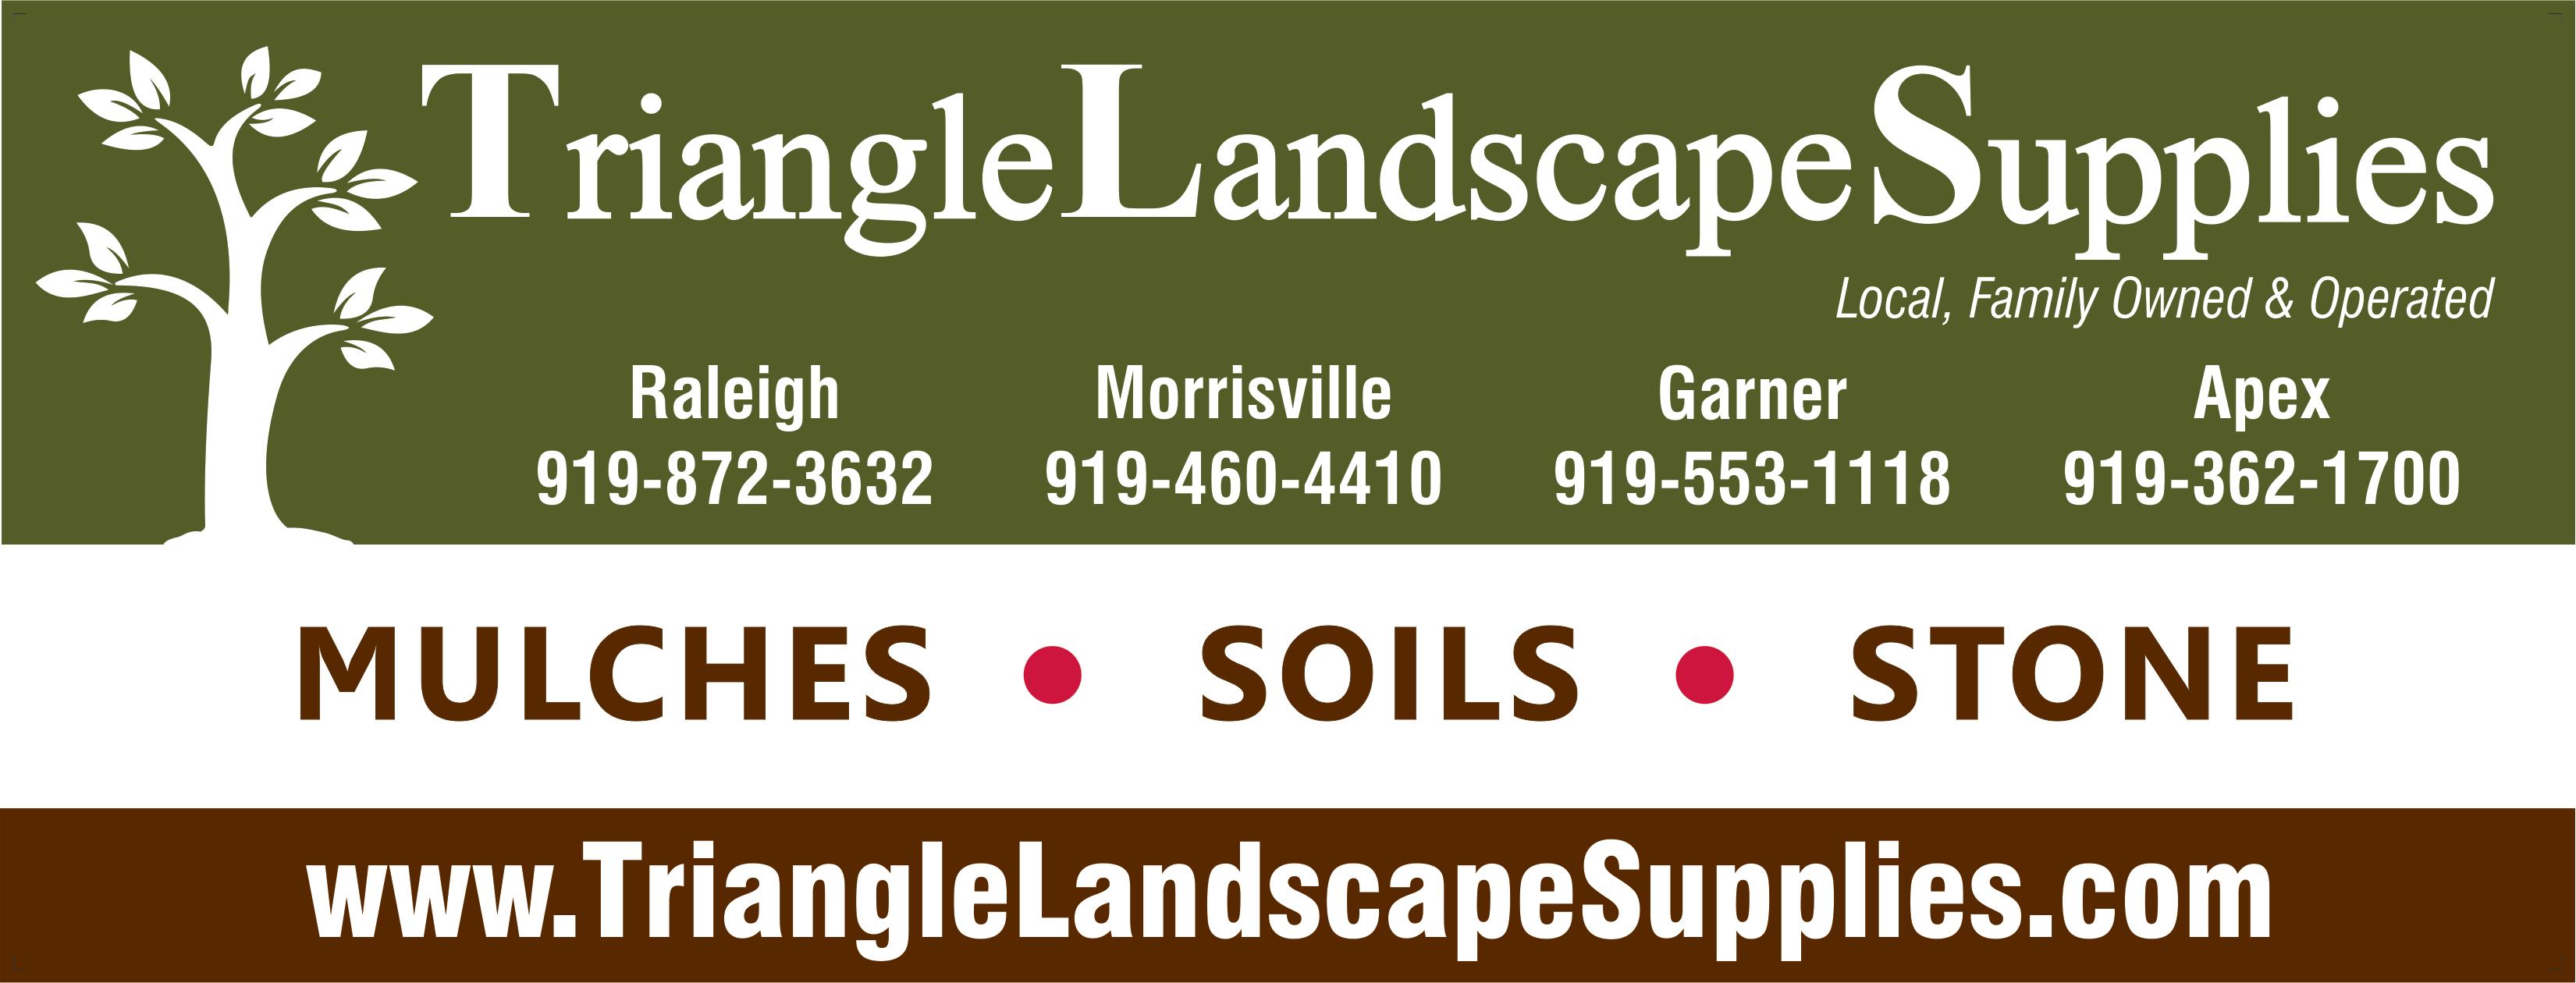 Triangle Landscape Supplies, Garner Photo